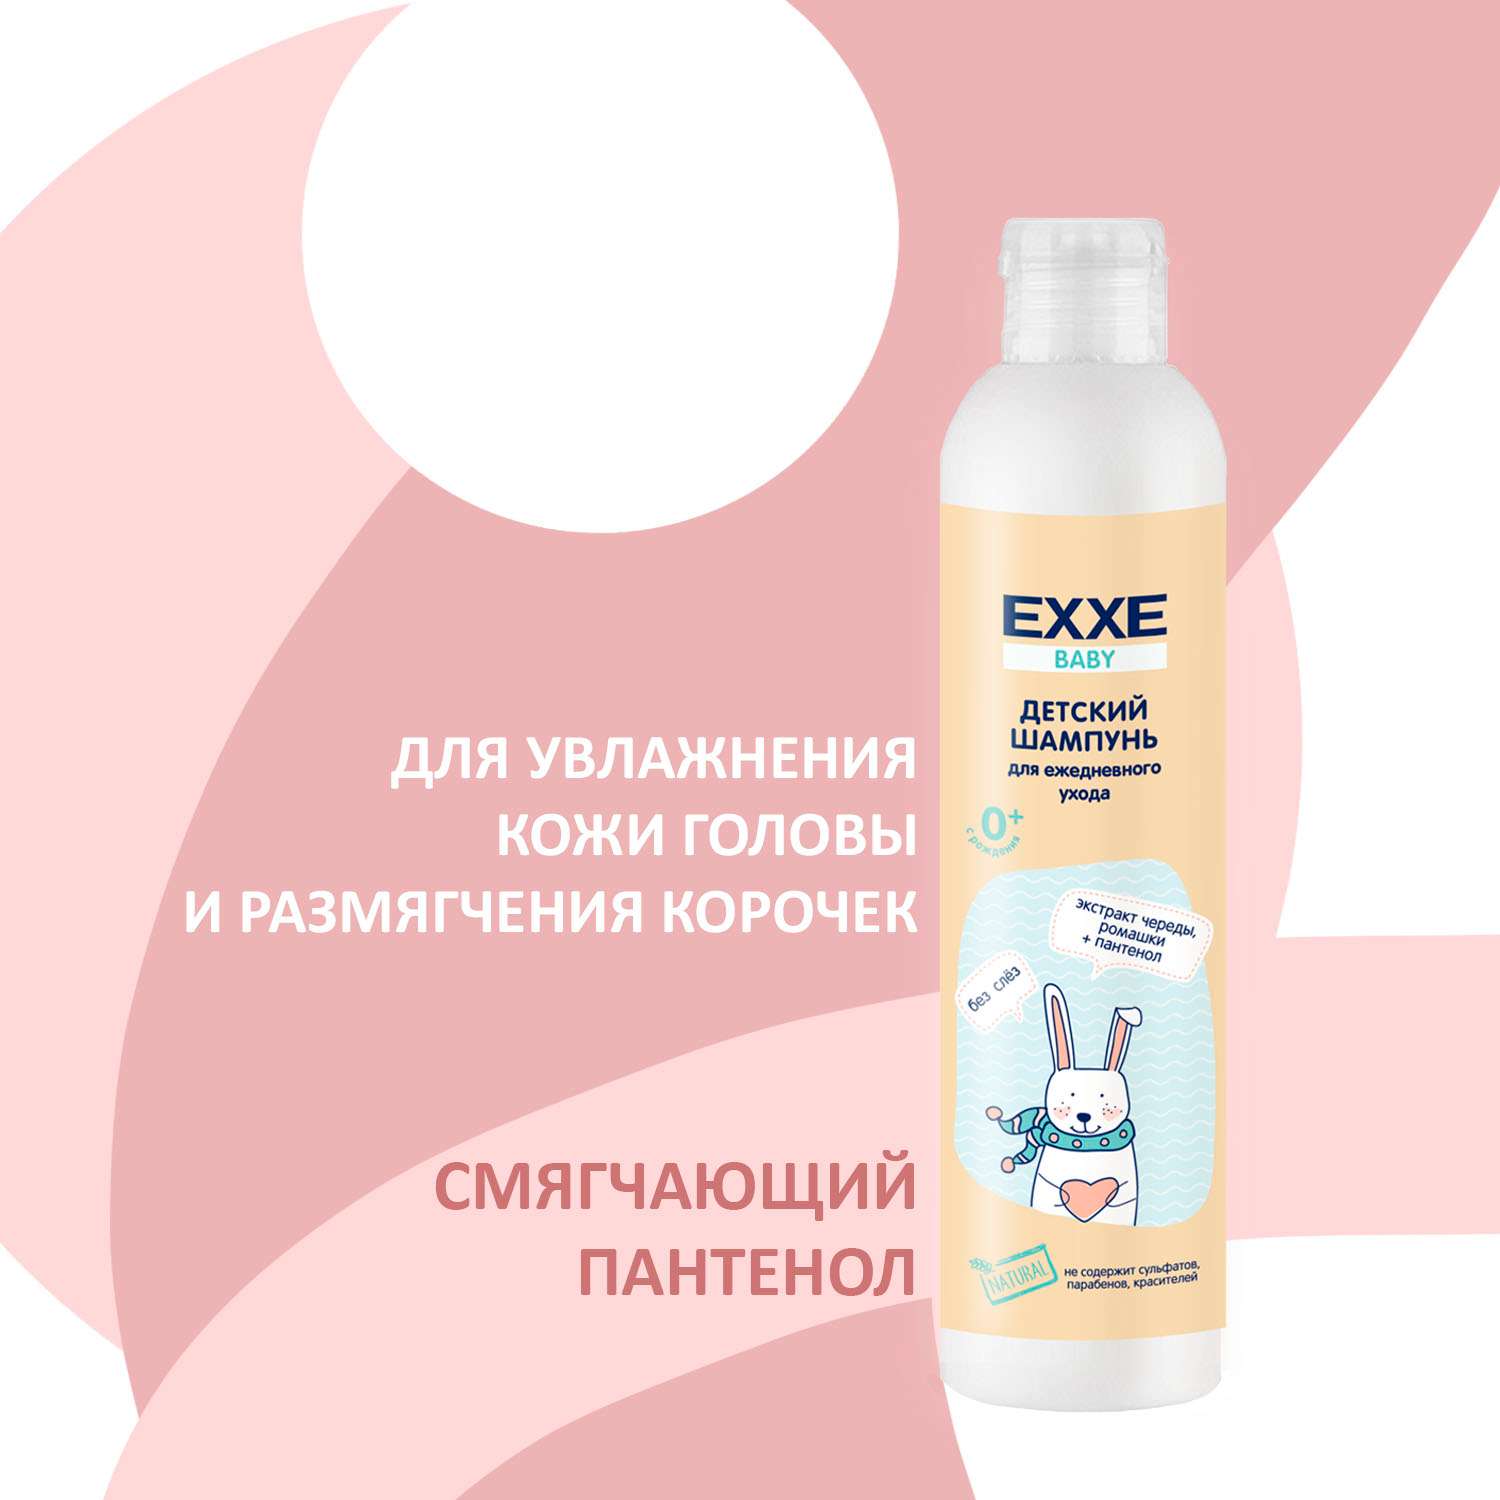 Детский набор 3 EXXE Baby жидкое мыло + шампунь + пенка для купания - фото 8